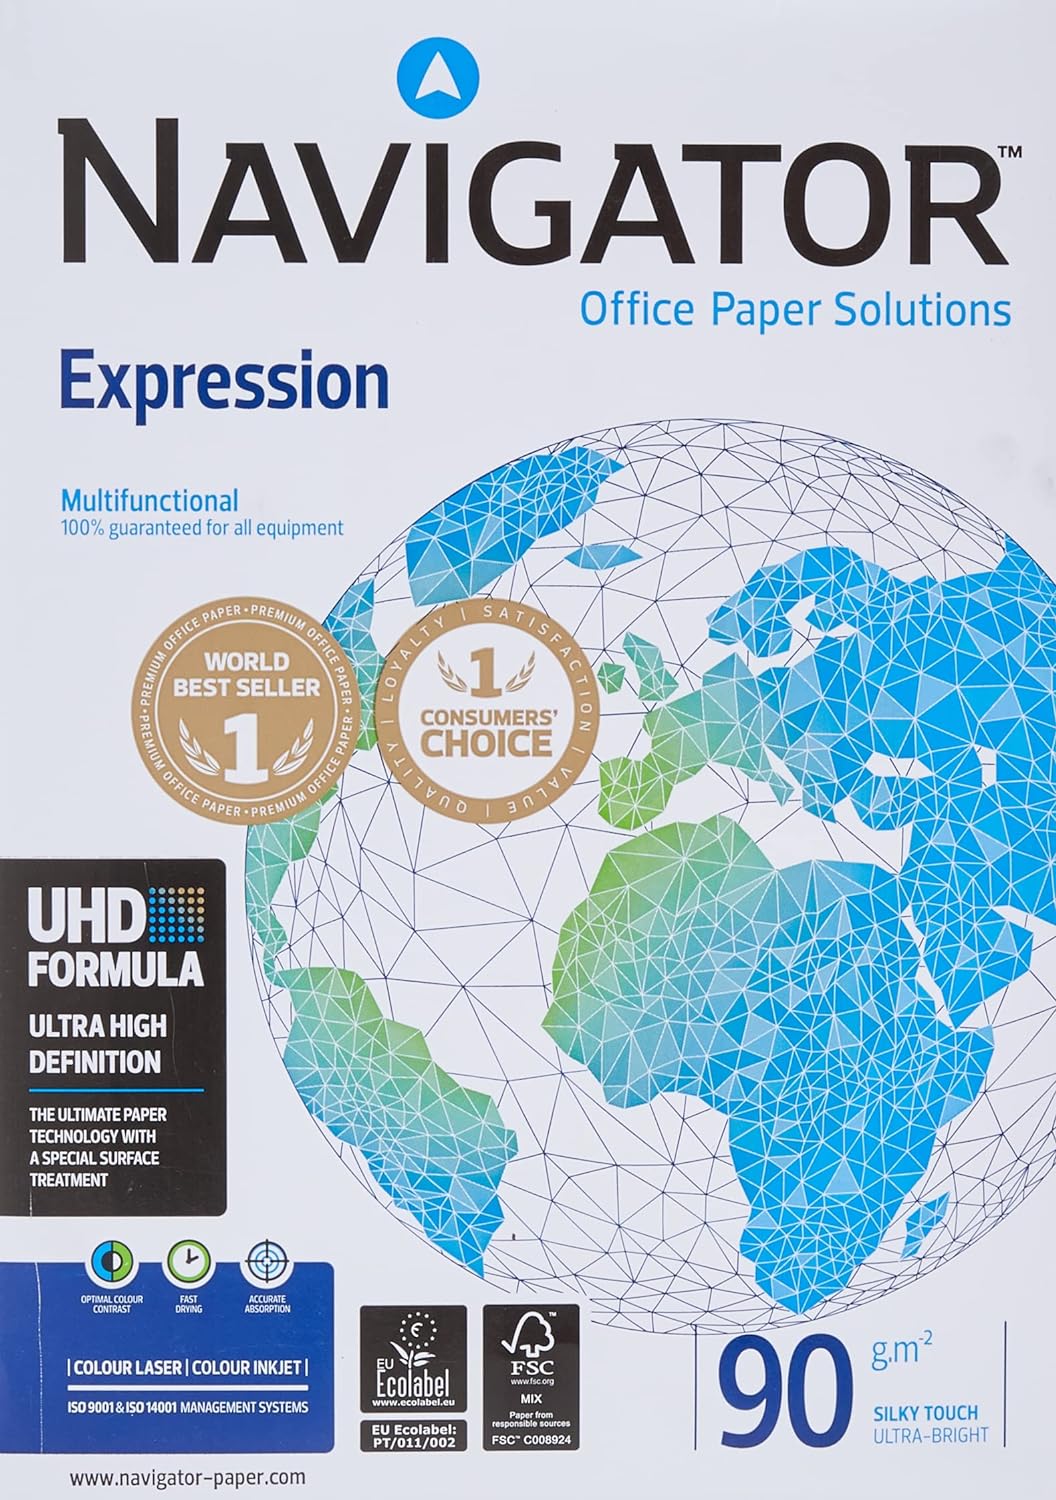 Folios Navigator Expression 90g: Calidad Superior para tus Impresiones y Proyectos